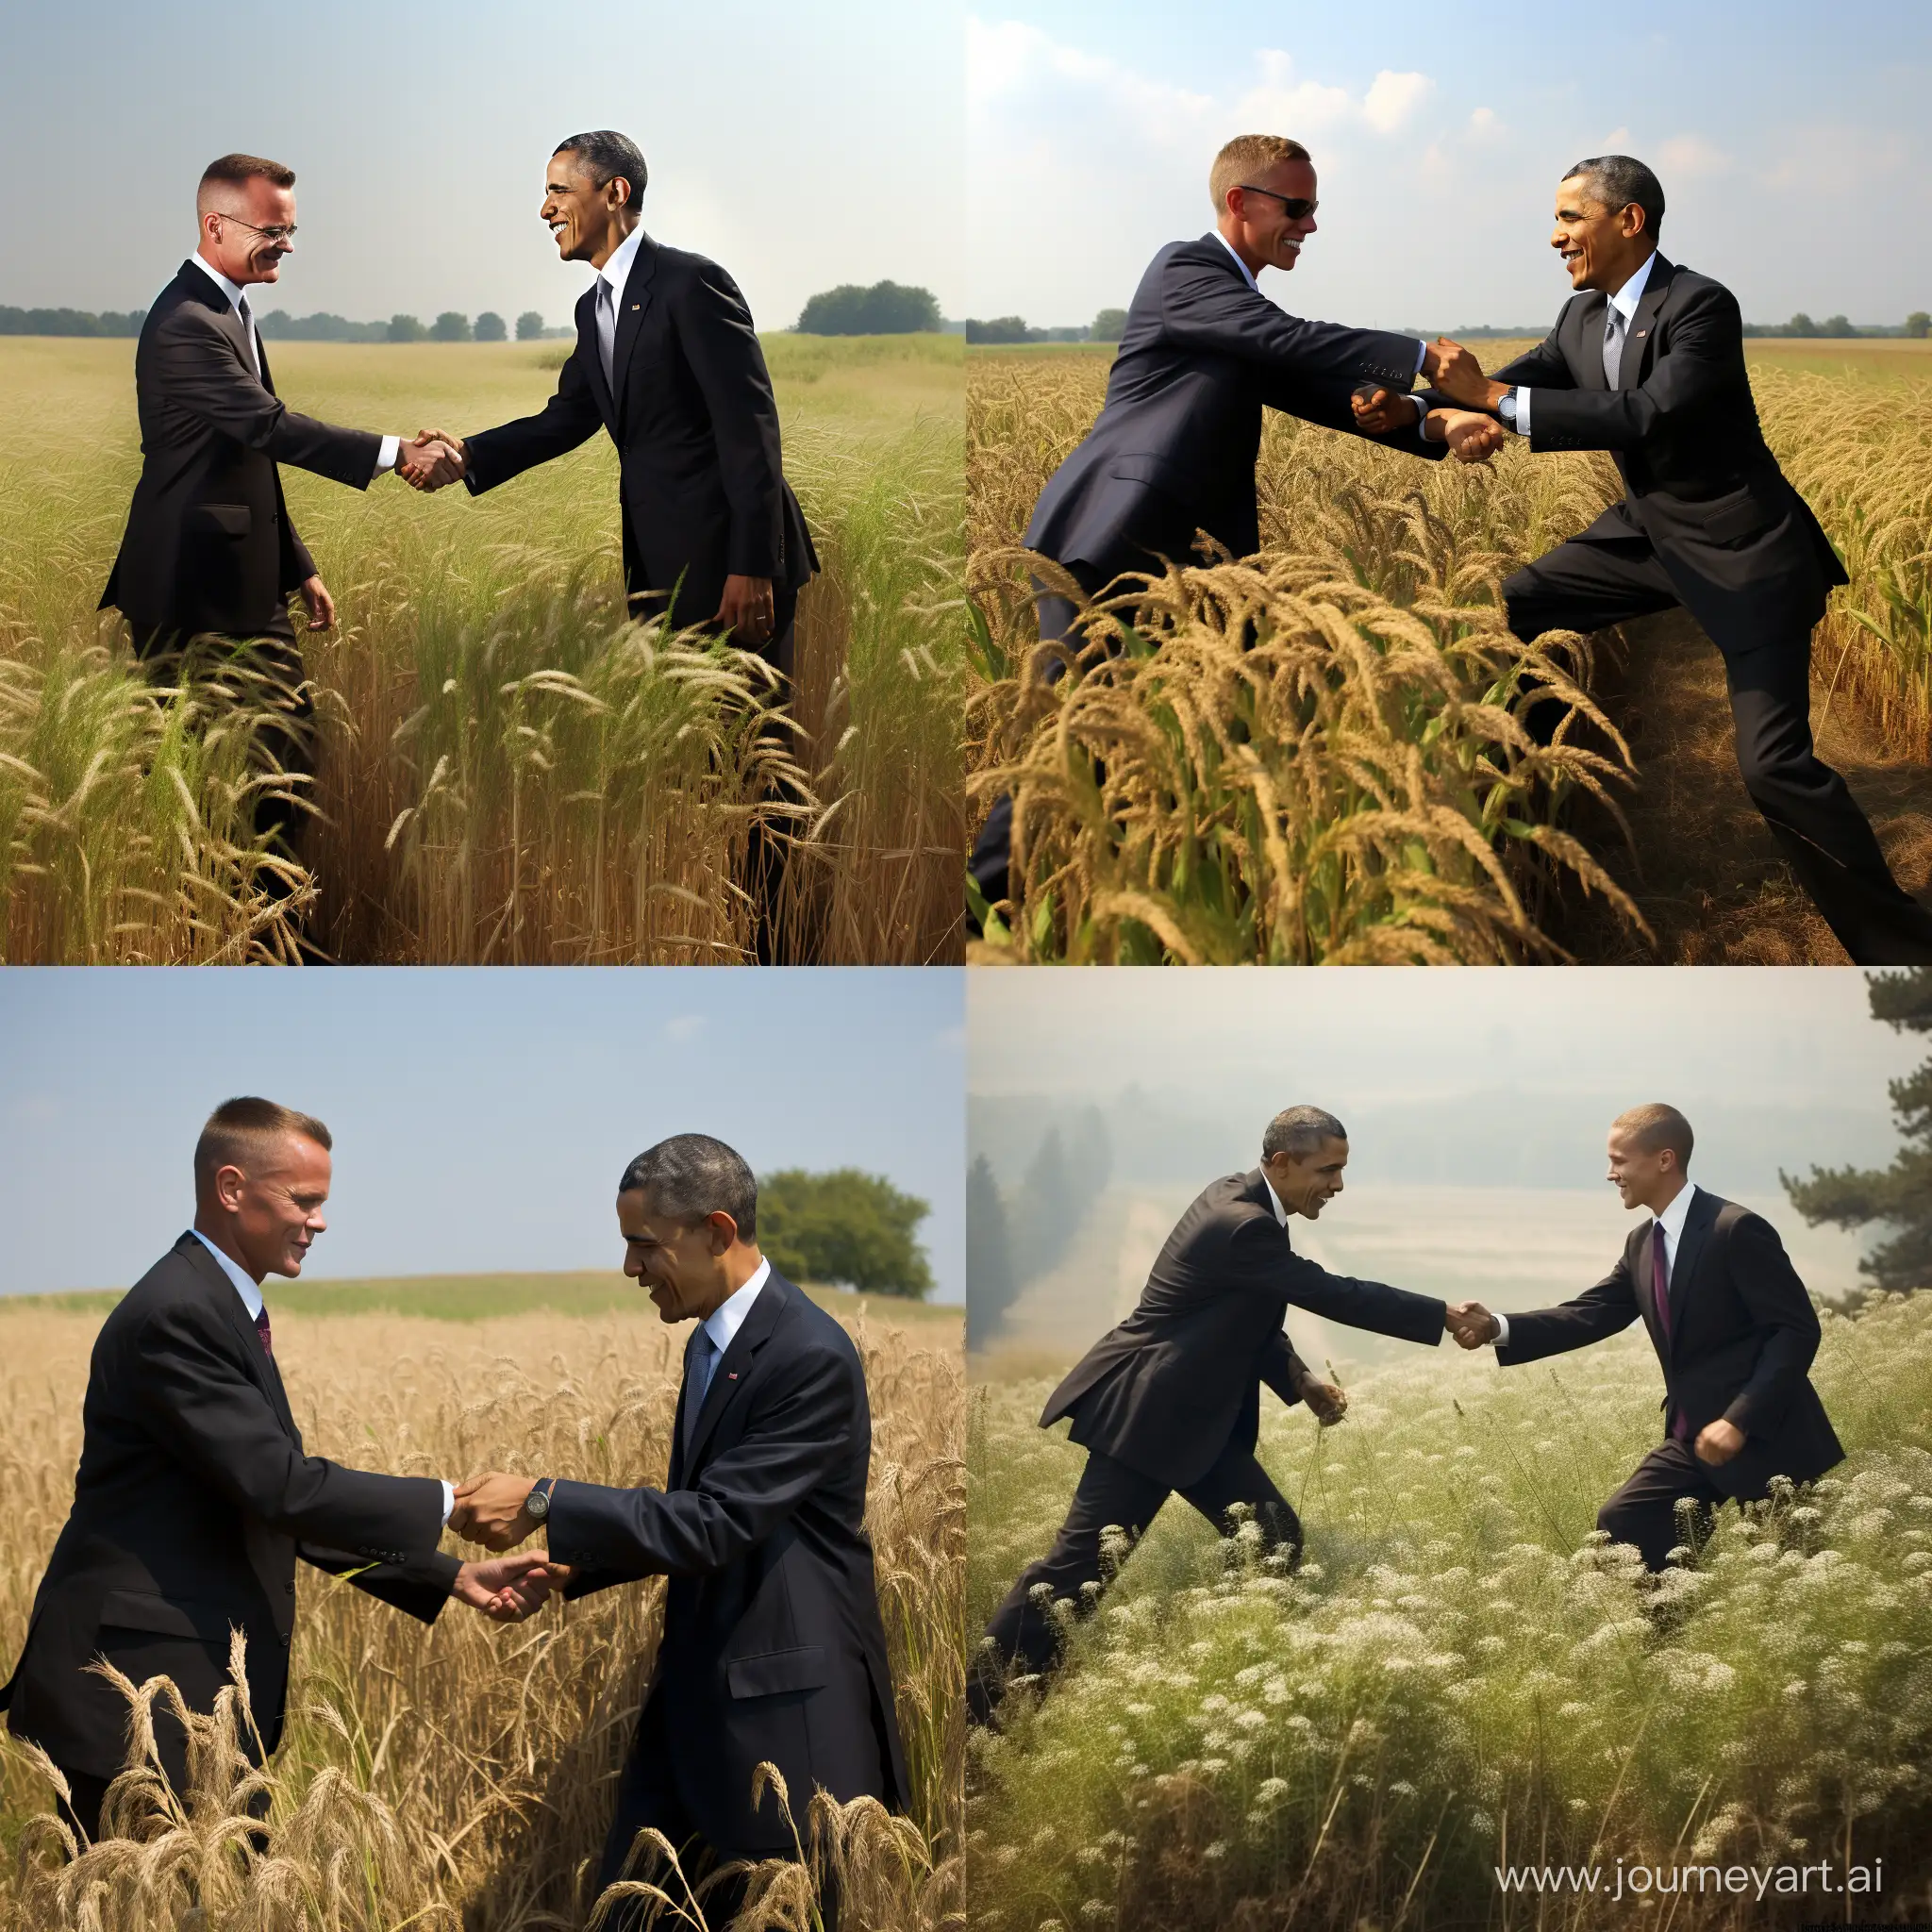 Obama-Fistbumping-Andrej-Duda-in-a-Picturesque-Field